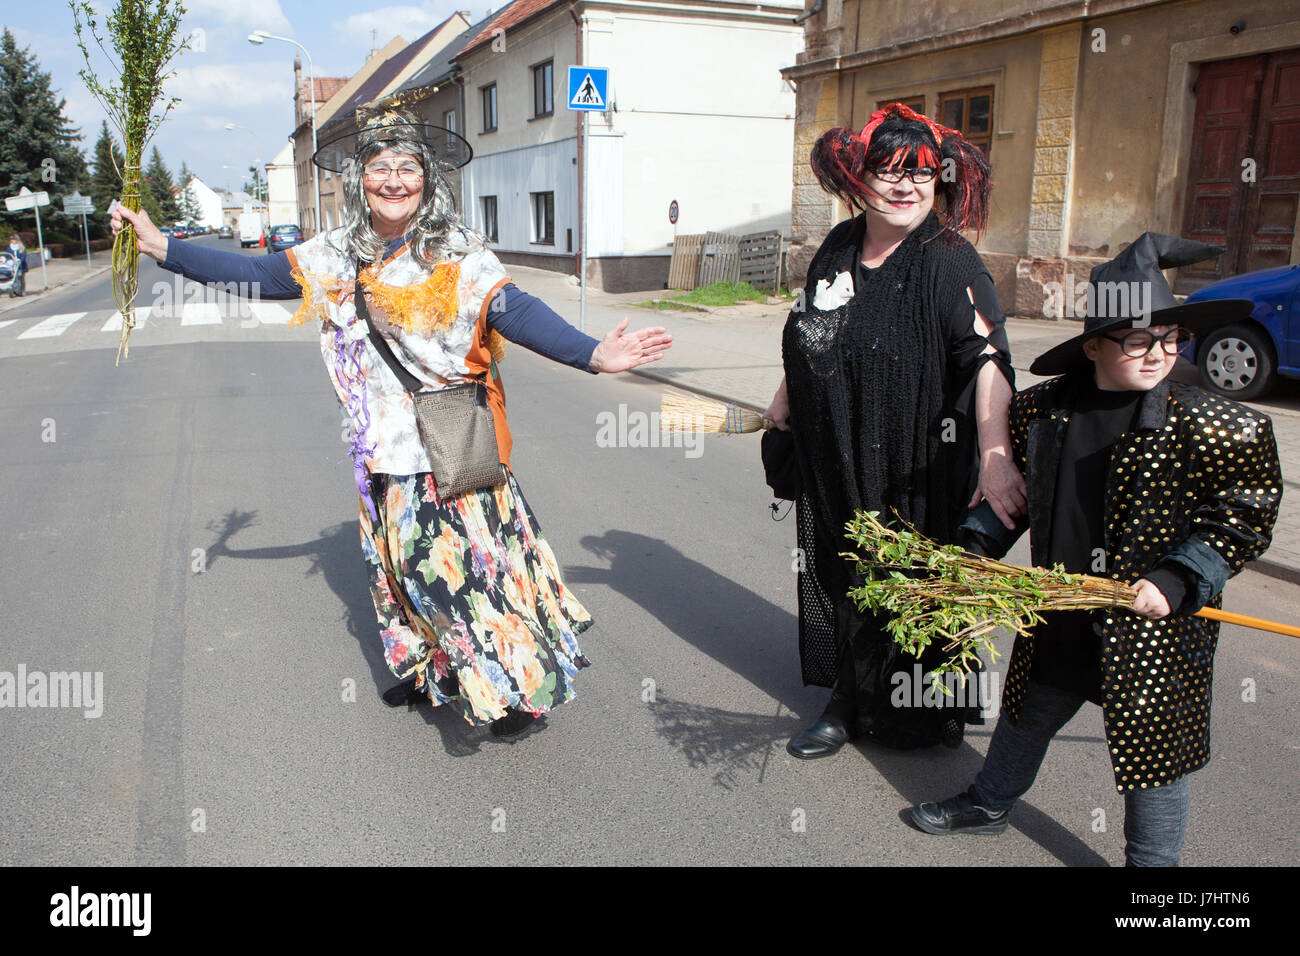 Walpurgisnacht-Frühlingsfest in Böhmen "Hexen Hexen" beginnt mit dem Hexen-Parade rund um das Dorf, Kryry, westlichen Böhmen, Tschechische Republik, Eu Stockfoto